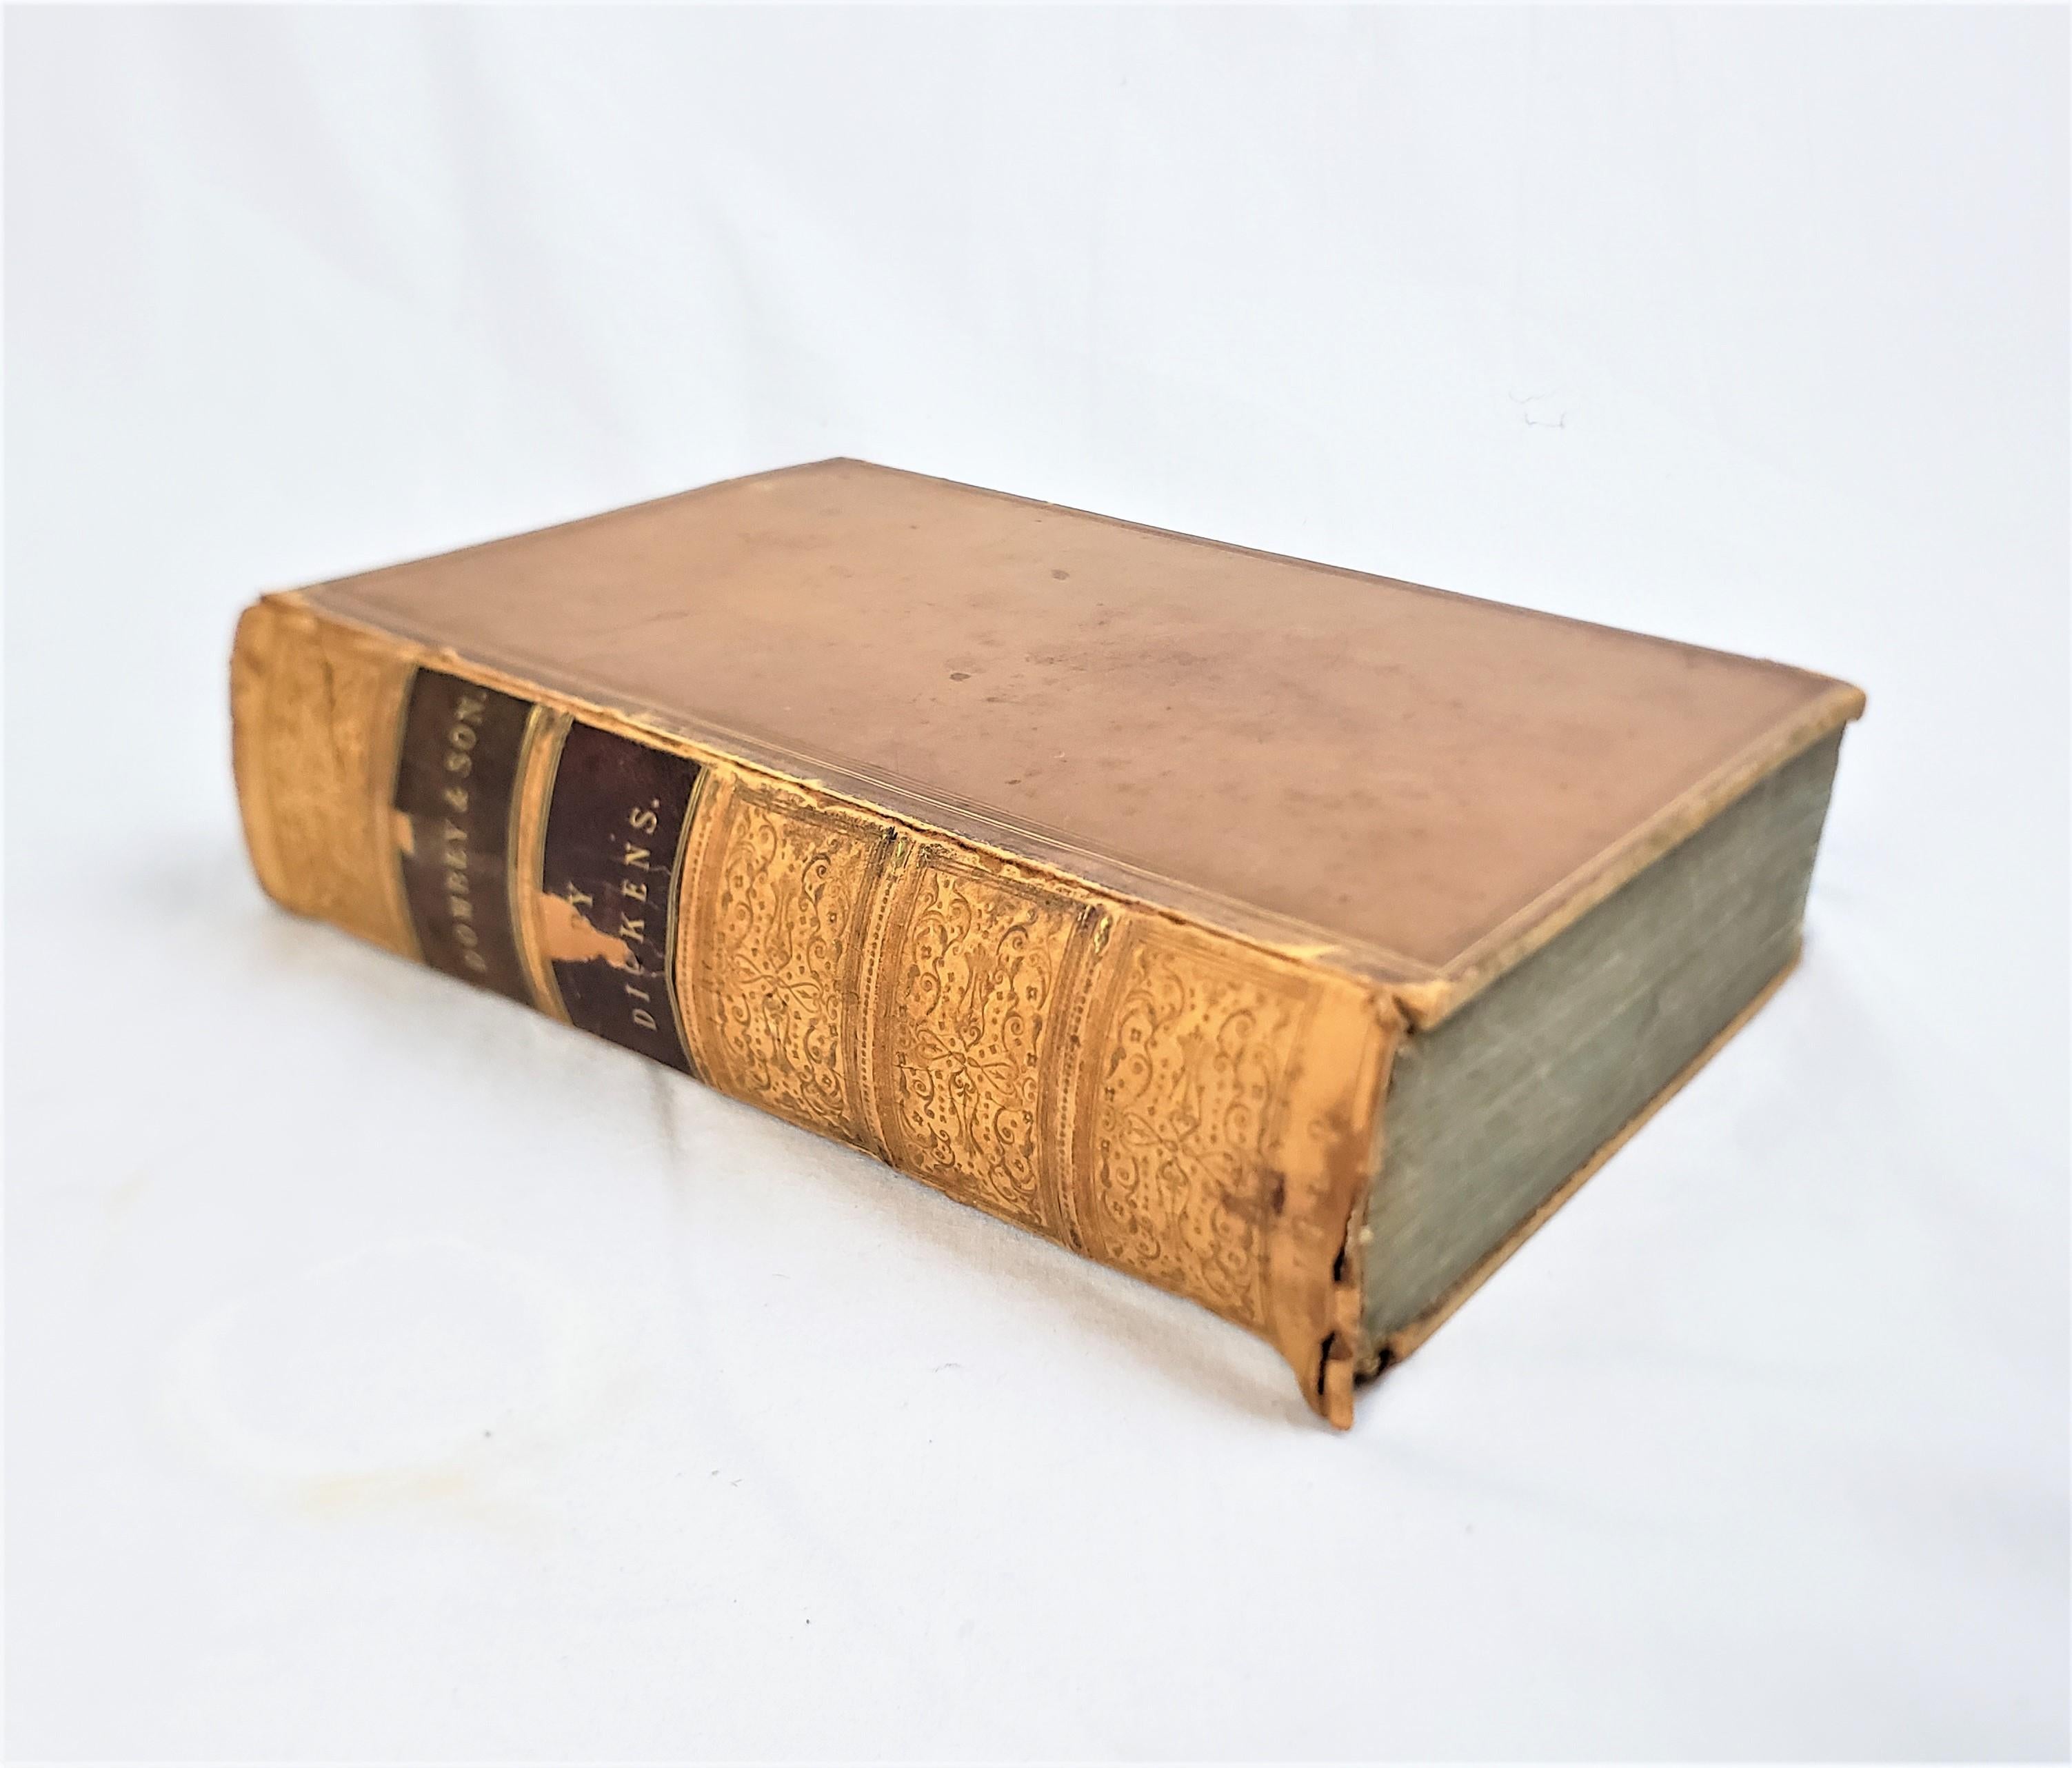 Ce livre ancien de 1ère édition intitulé Dombey & Son a été écrit par Charles Dickens et publié par Bradbury & Evans, Whitefriars of England en 1848 dans le style victorien de l'époque avec des gravures de Hablot Knight Browne 